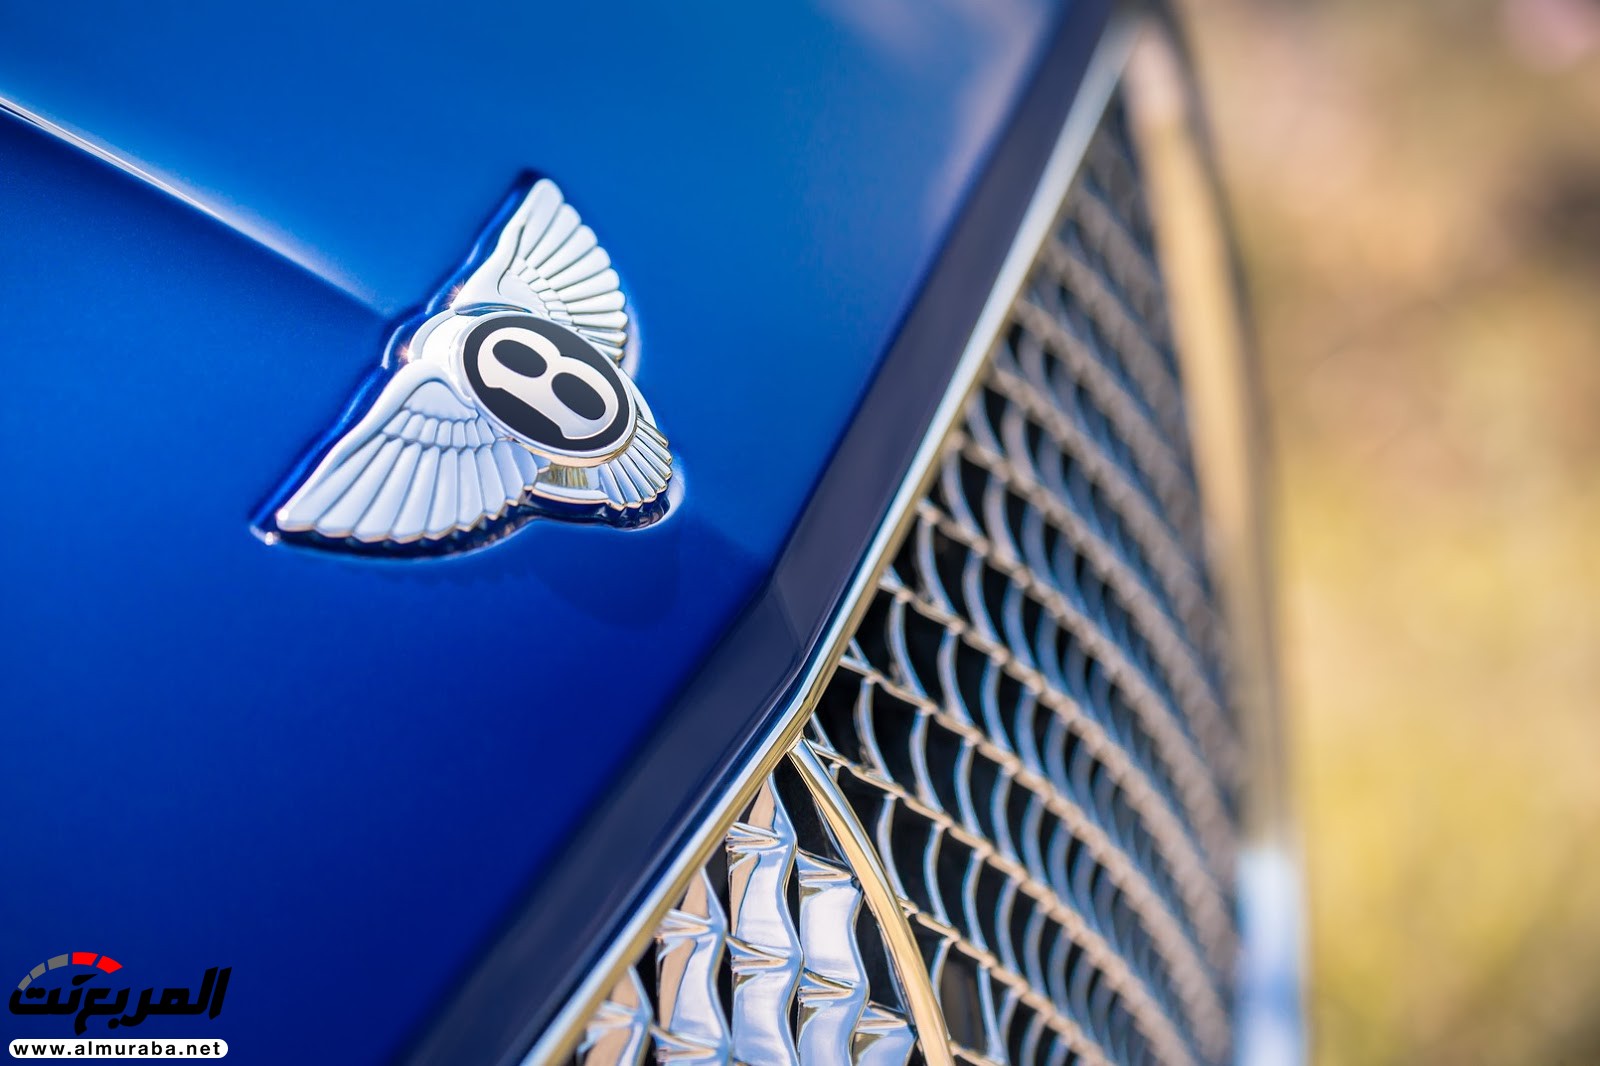 بنتلي كونتيننتال GT 2018 الجديدة كلياً "أفخم سيارة رياضية" تكشف نفسها رسمياً + صور ومواصفات 11